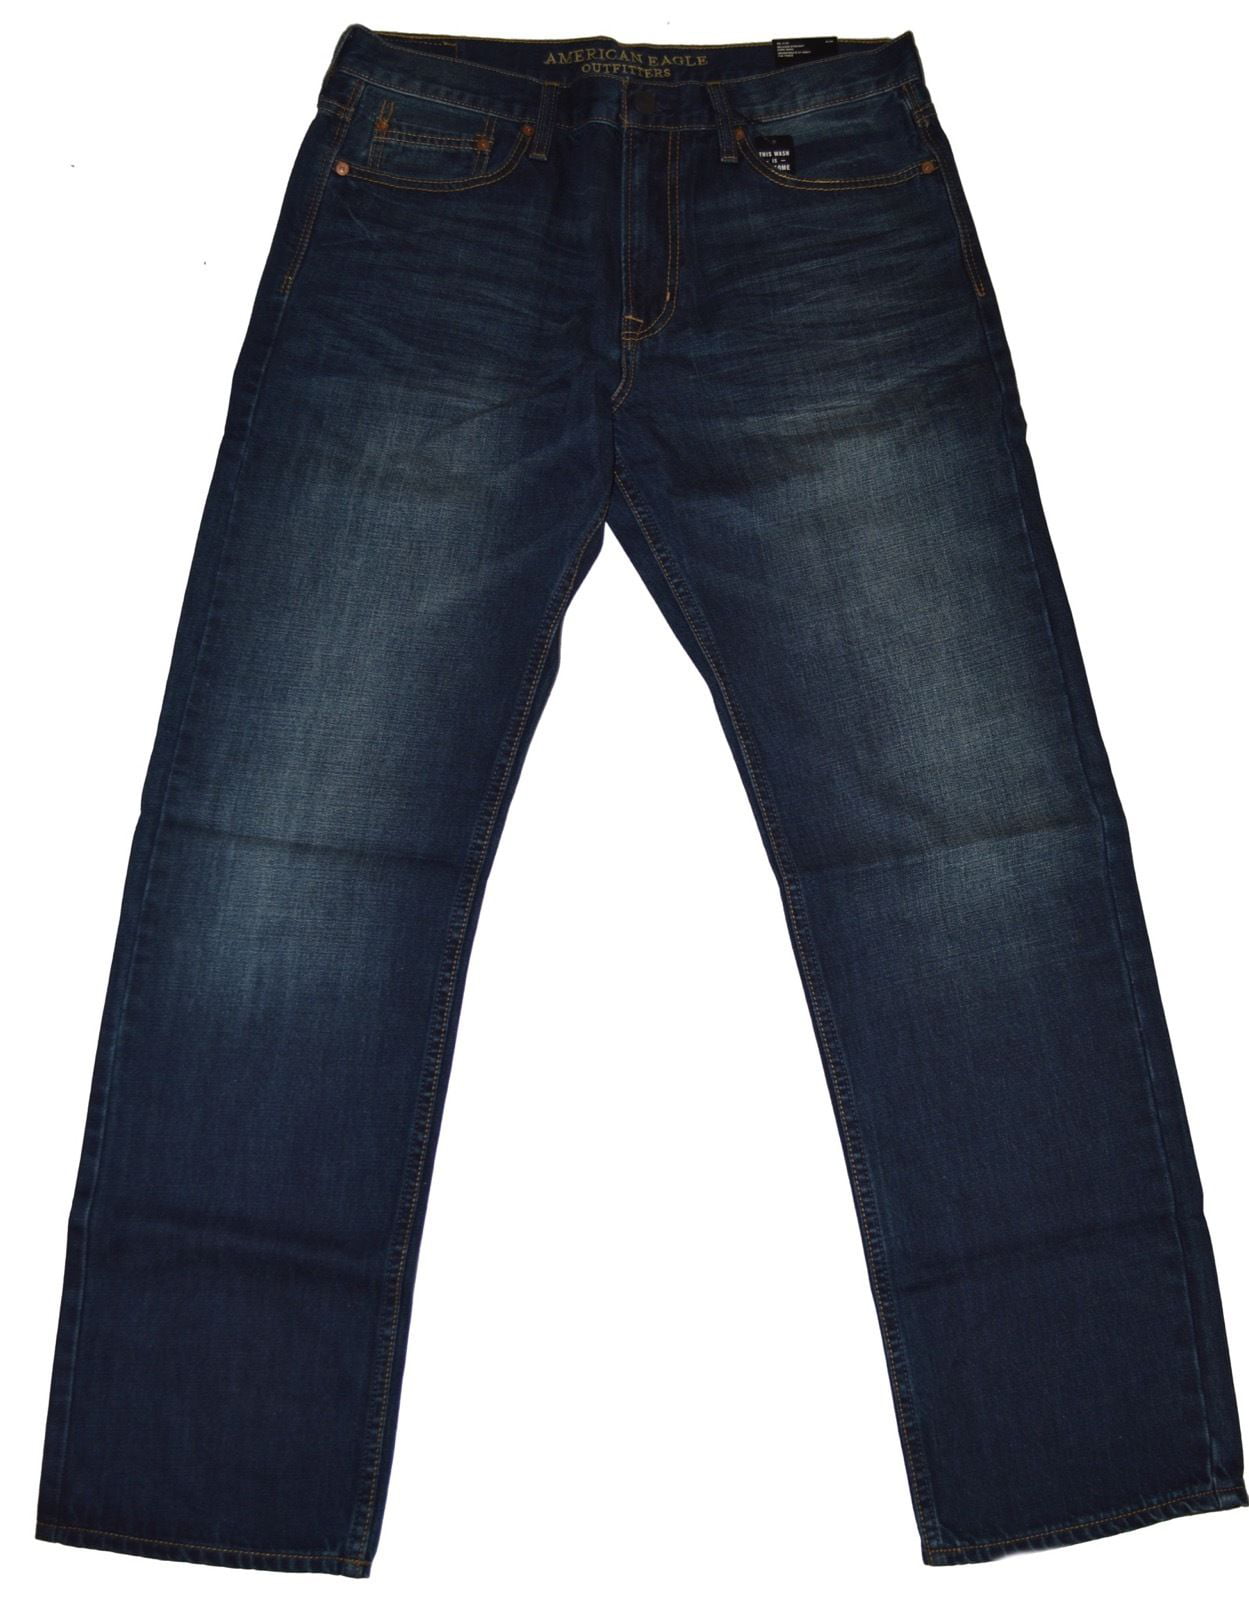 dark blue jeans walmart